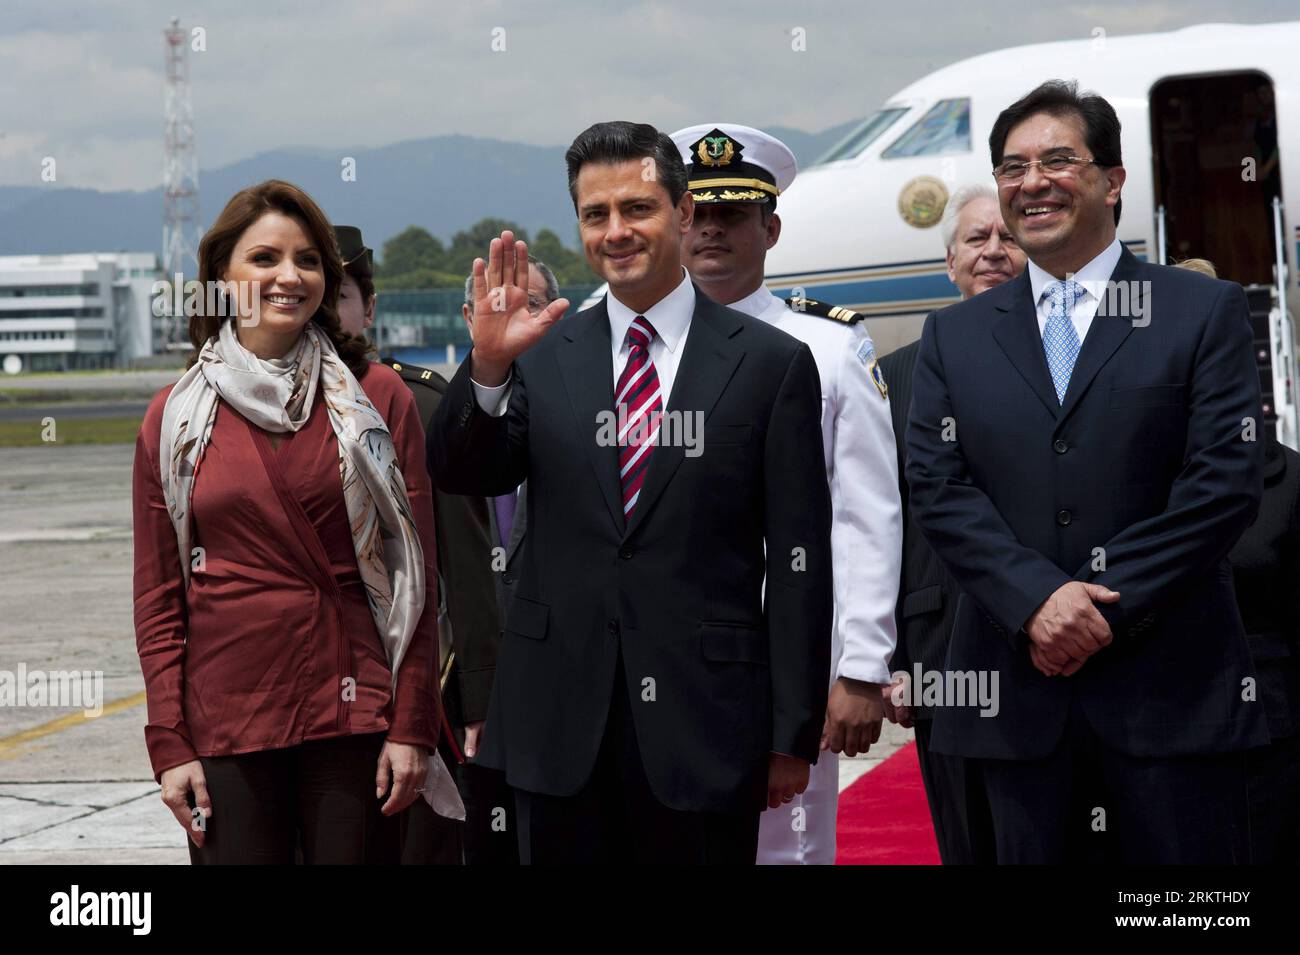 Bildnummer : 58483866 Datum : 17.09.2012 Copyright : imago/Xinhua (120918) -- GUATEMALA CITY, 18 septembre 2012 (Xinhua) -- le président élu du Mexique, Enrique Pena Nieto (C), accompagné de son épouse Angelica Rivera (G), est reçu par le chancelier du Guatemala, Harold Caballeros (D), dans les installations de l armée de l air guatémaltèque, à Guatelama, capitale du Guatemala, le 17 septembre 2012. Pena Nieto a lancé lundi une tournée latino-américaine en visitant le Guatemala, la Colombie, le Brésil, le Chili, l'Argentine et le Pérou, discuter des questions liées à la sécurité, au commerce, à l'immigration et à la drogue. (Xinhua/Luis Echeverria) (da) (sp) £¨Î÷£©£¨¹ú¼Ê Banque D'Images